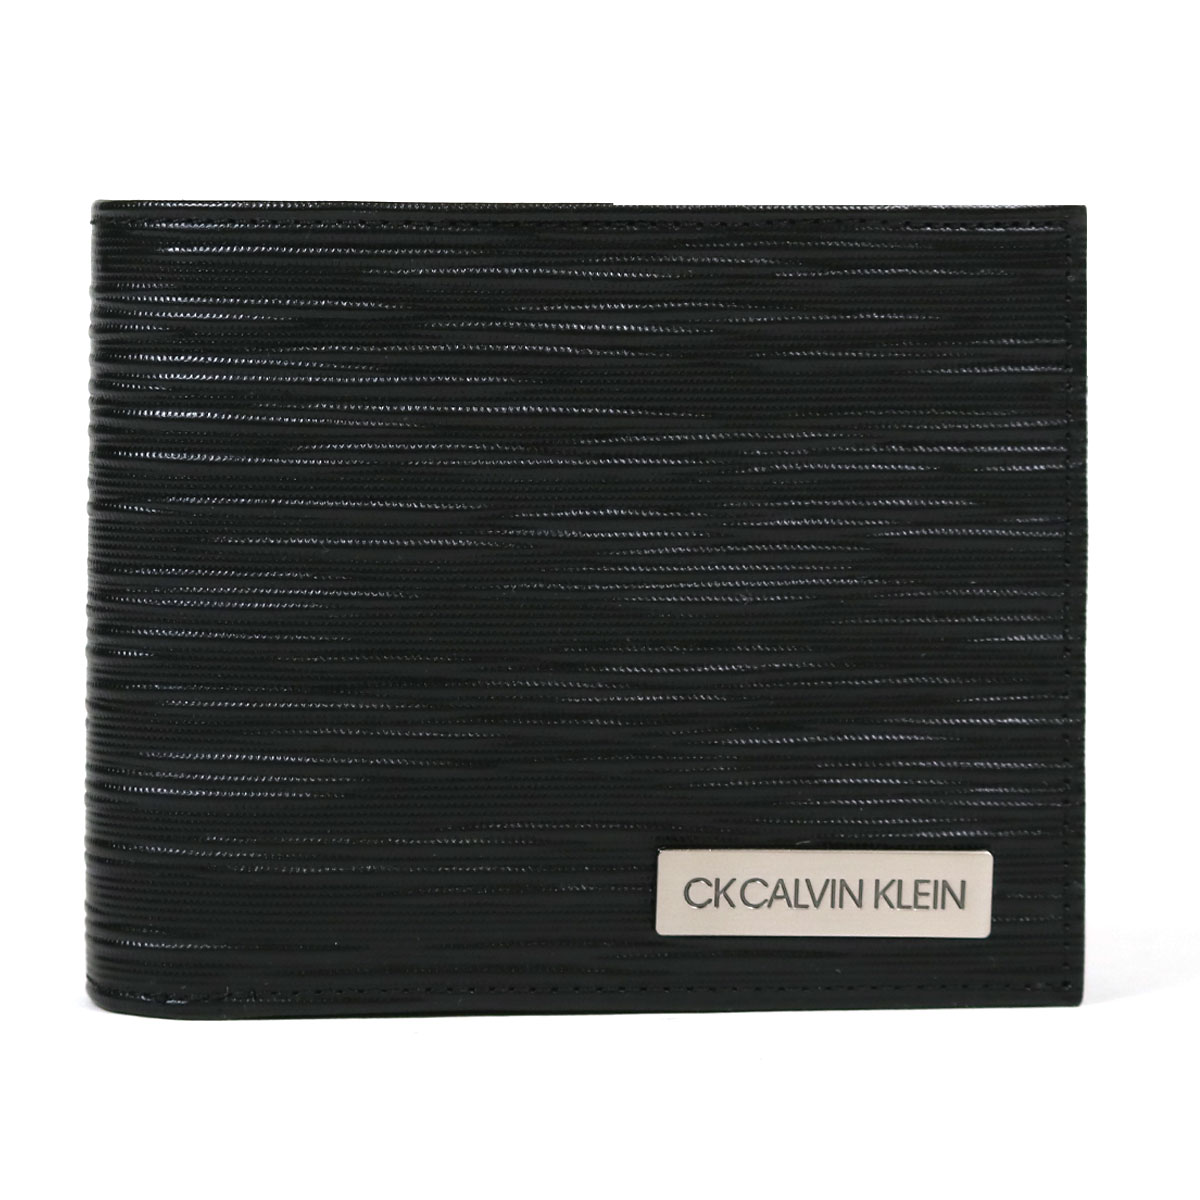 シーケー カルバンクライン 二つ折り財布 タットII メンズ 808614 CK CALVIN KLEIN | 本革 レザー